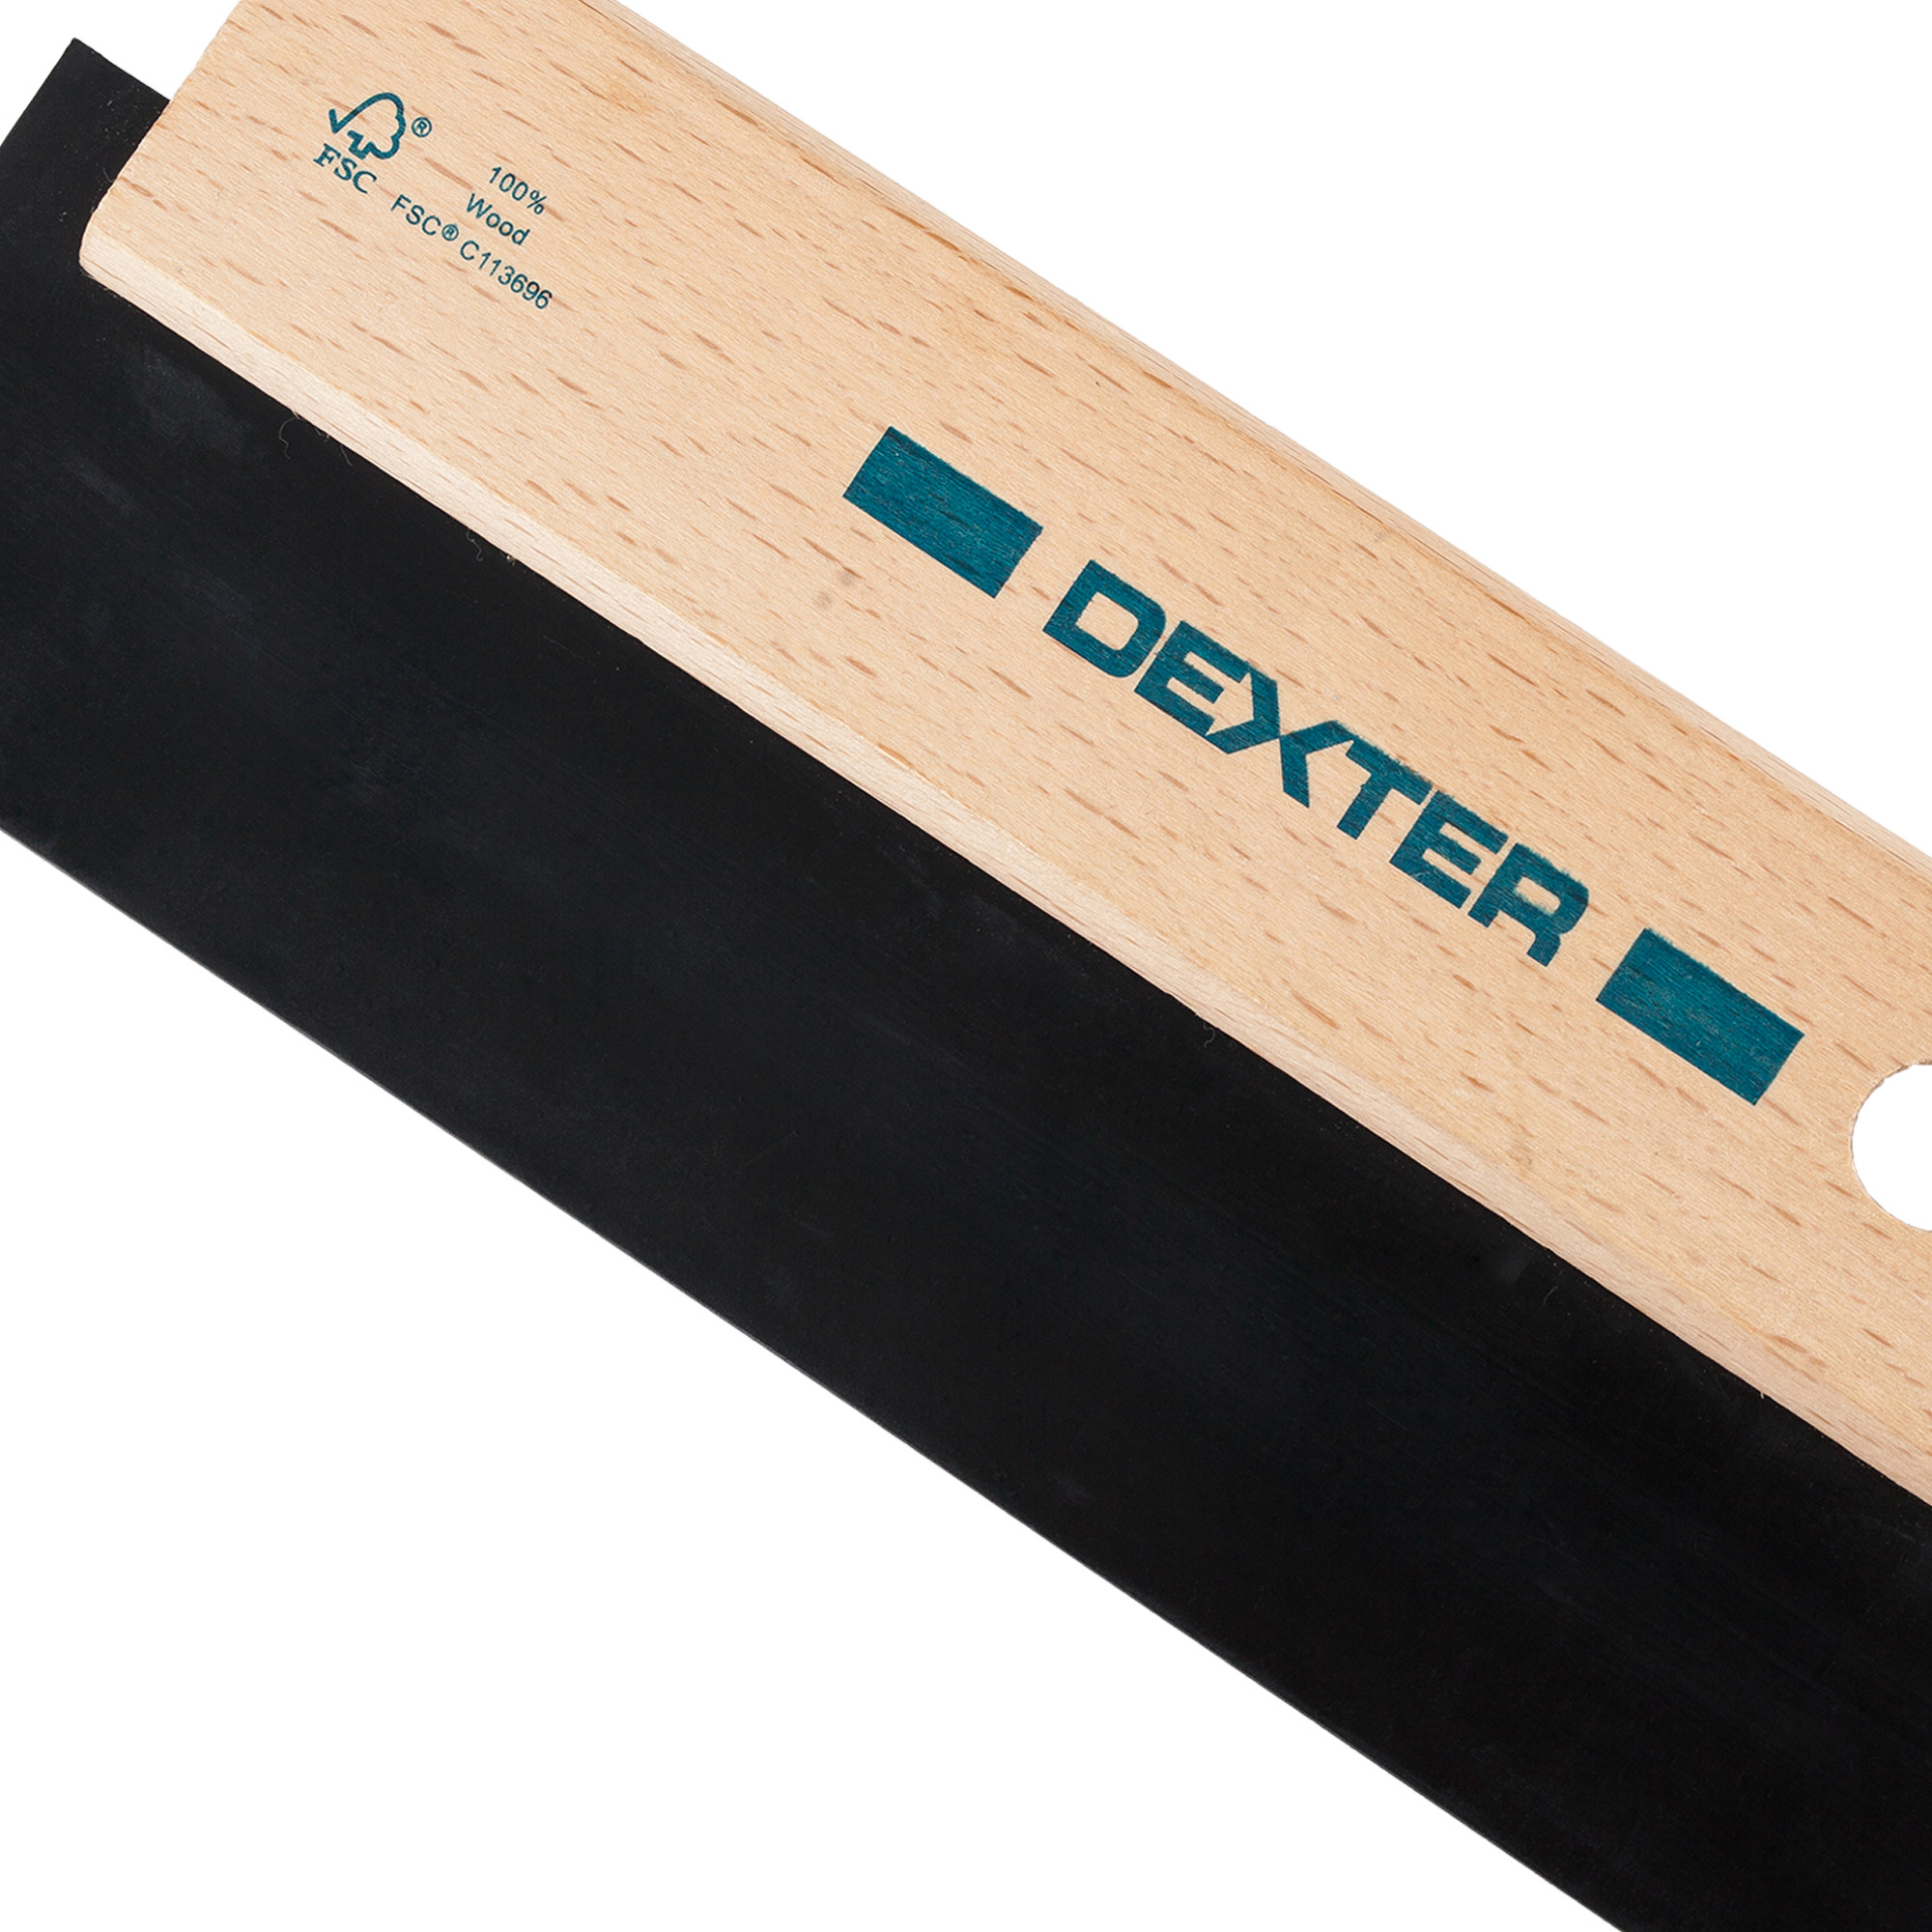  резиновый Dexter 195 мм, деревянная ручка –   по .